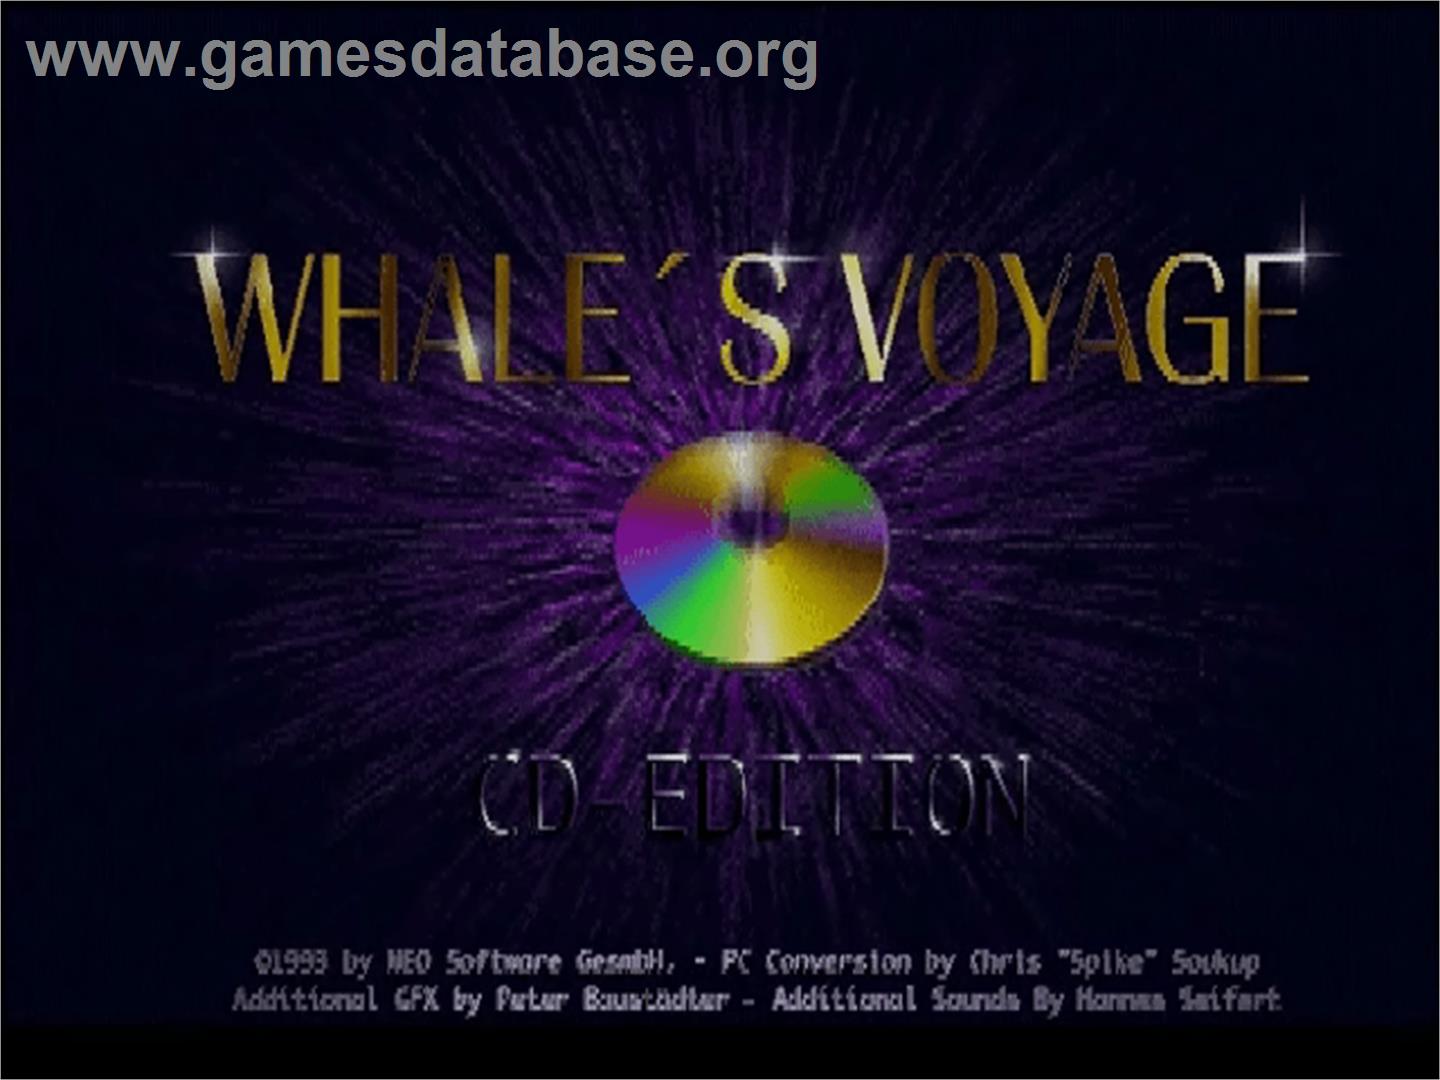 Whale's Voyage - Commodore Amiga CD32 - Artwork - Title Screen